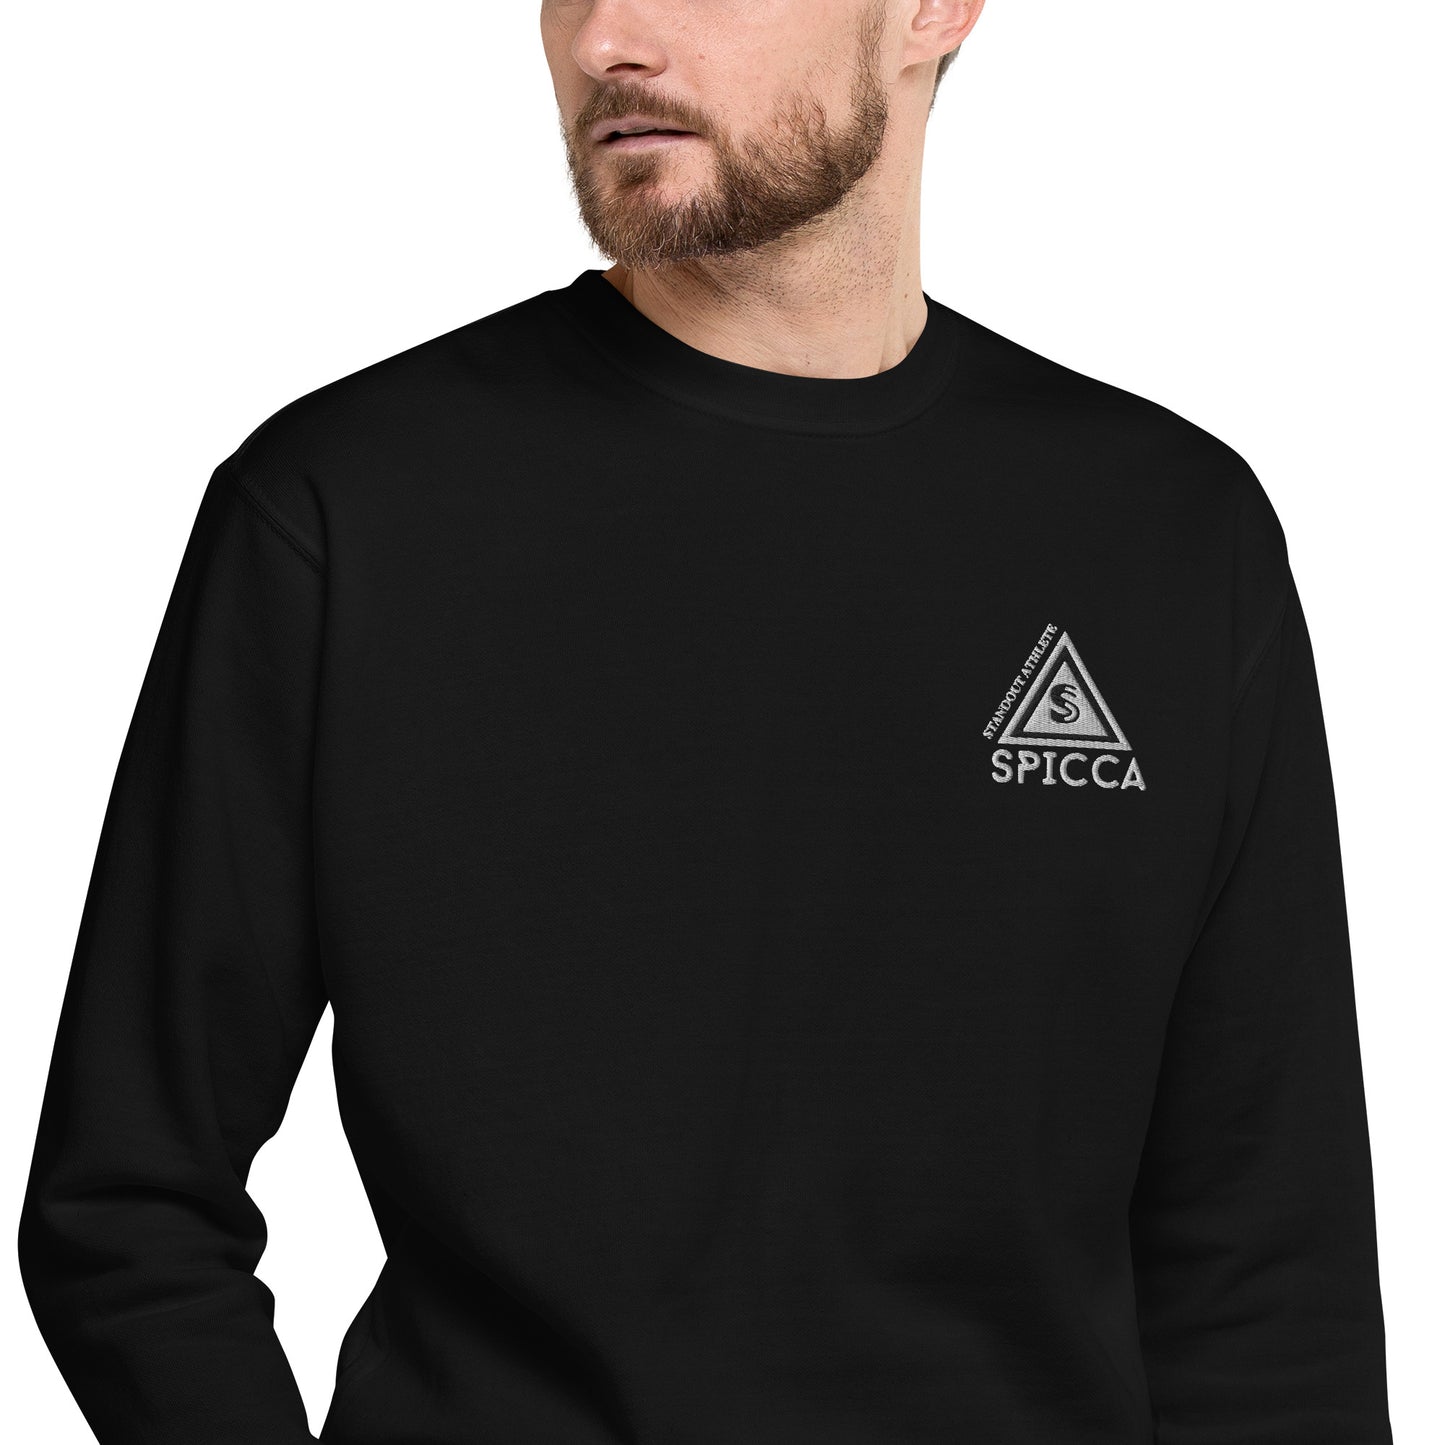 SPICCA STANDOUT ATHLETE Embroidered Logo Unisex Premium Sweatshirt